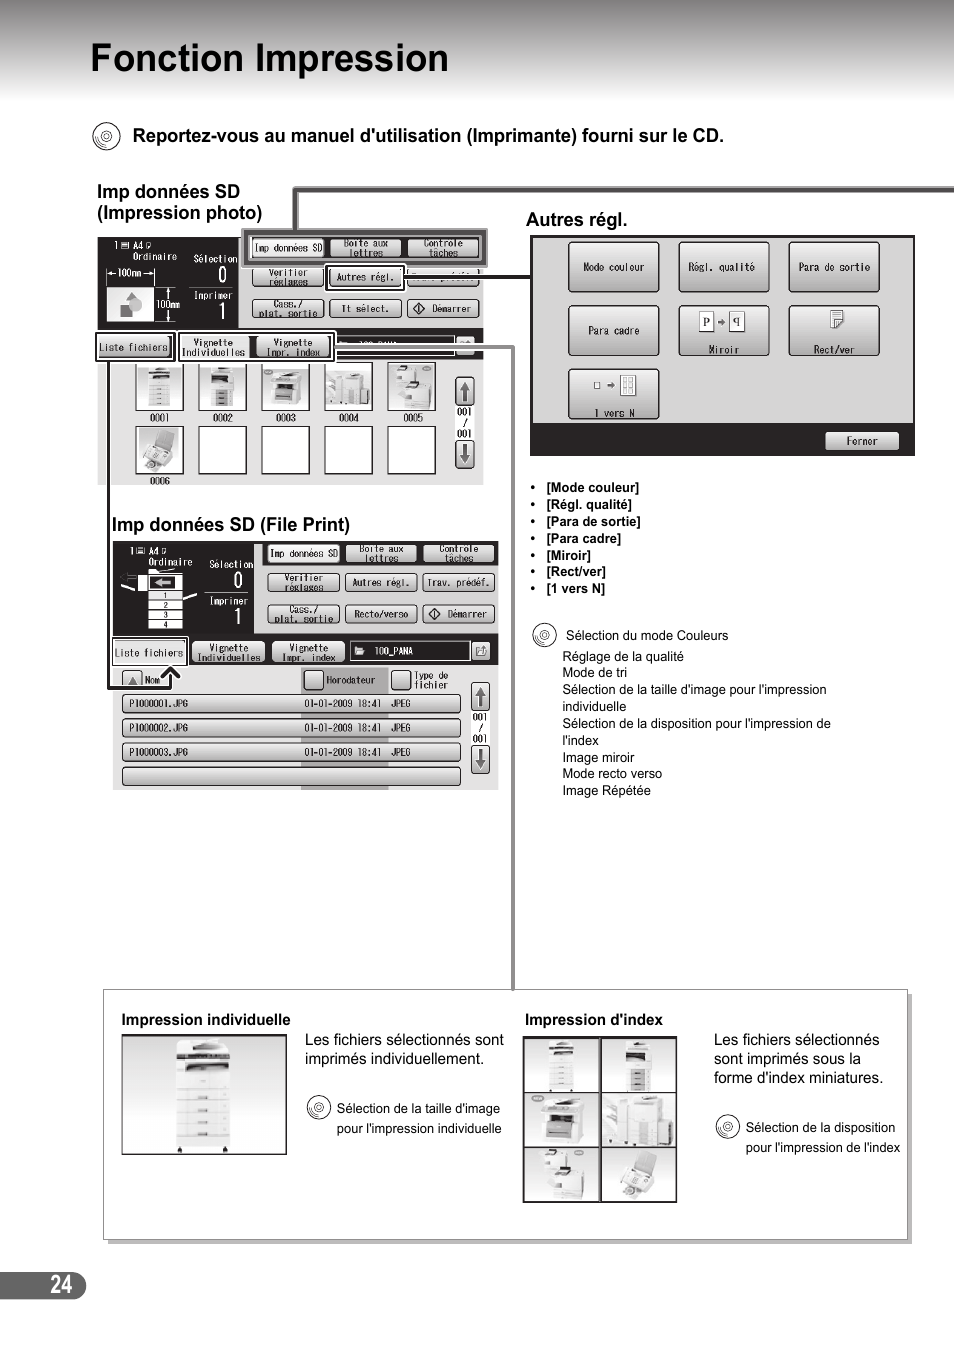 Fonction impression, S 24 | Panasonic DPC266 Manuel d'utilisation | Page 24 / 40